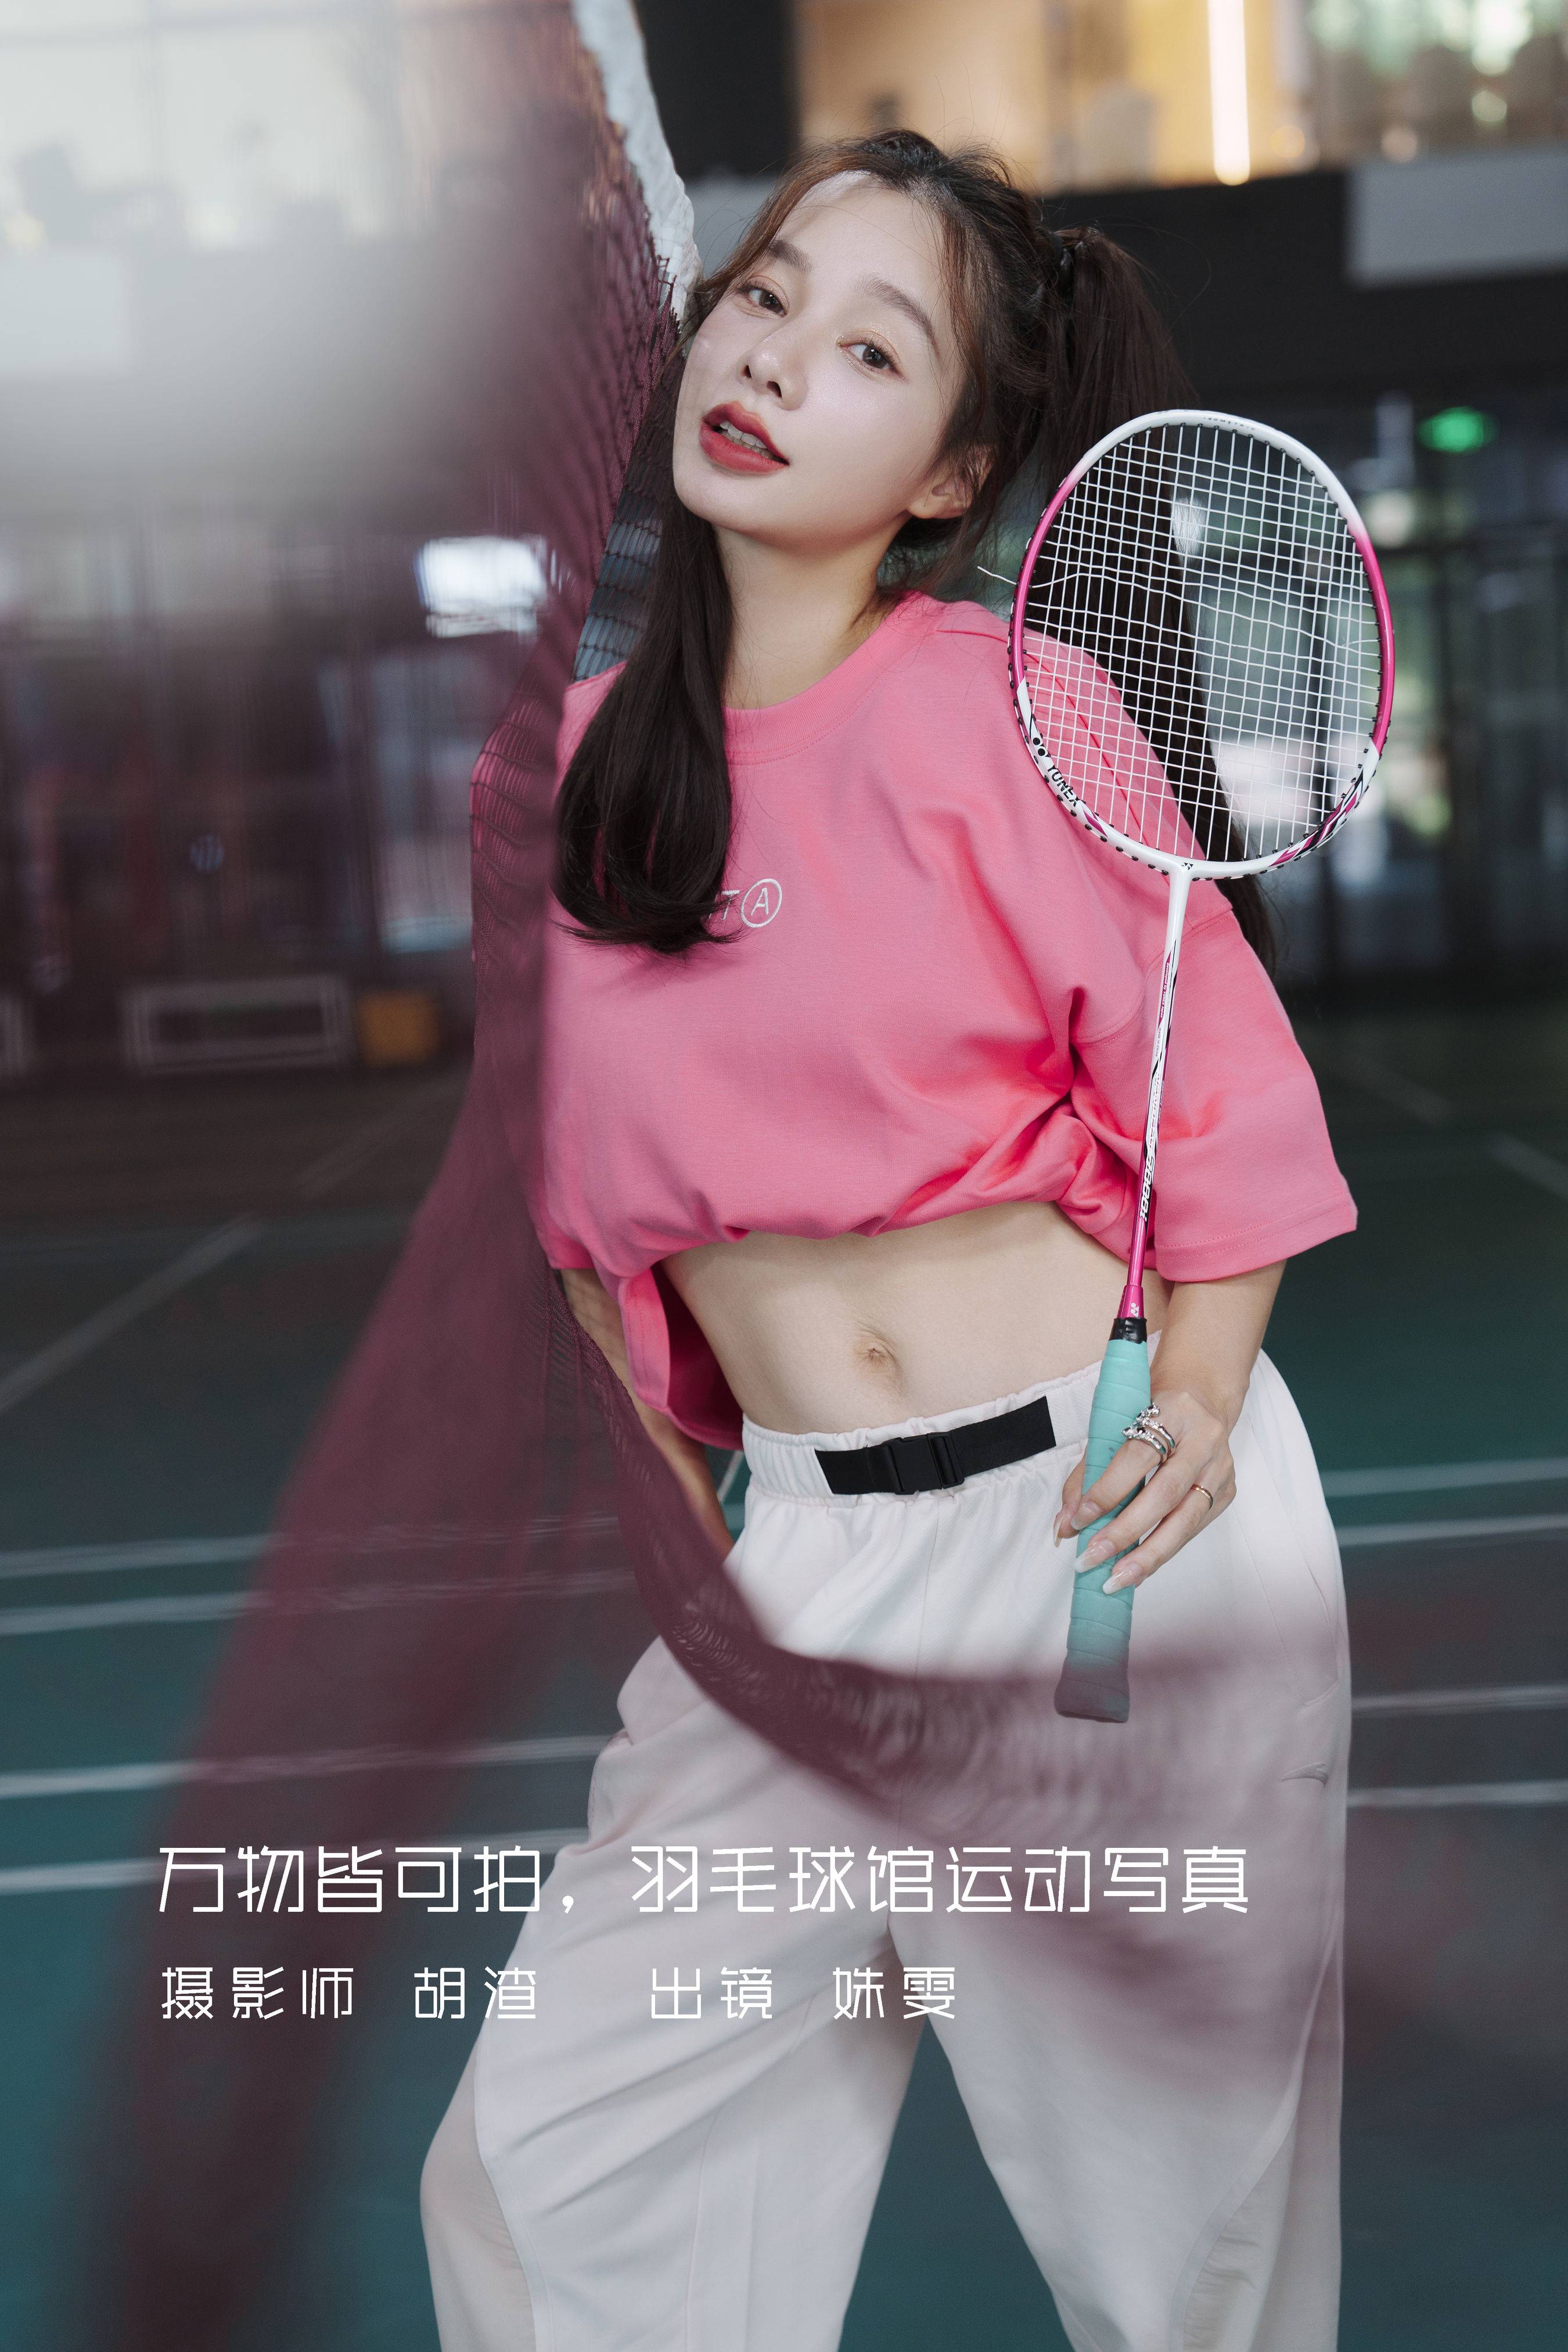 万物皆可拍，羽毛球馆运动写真 写真模特 小姐姐 写真集&YiTuYu艺图语-1